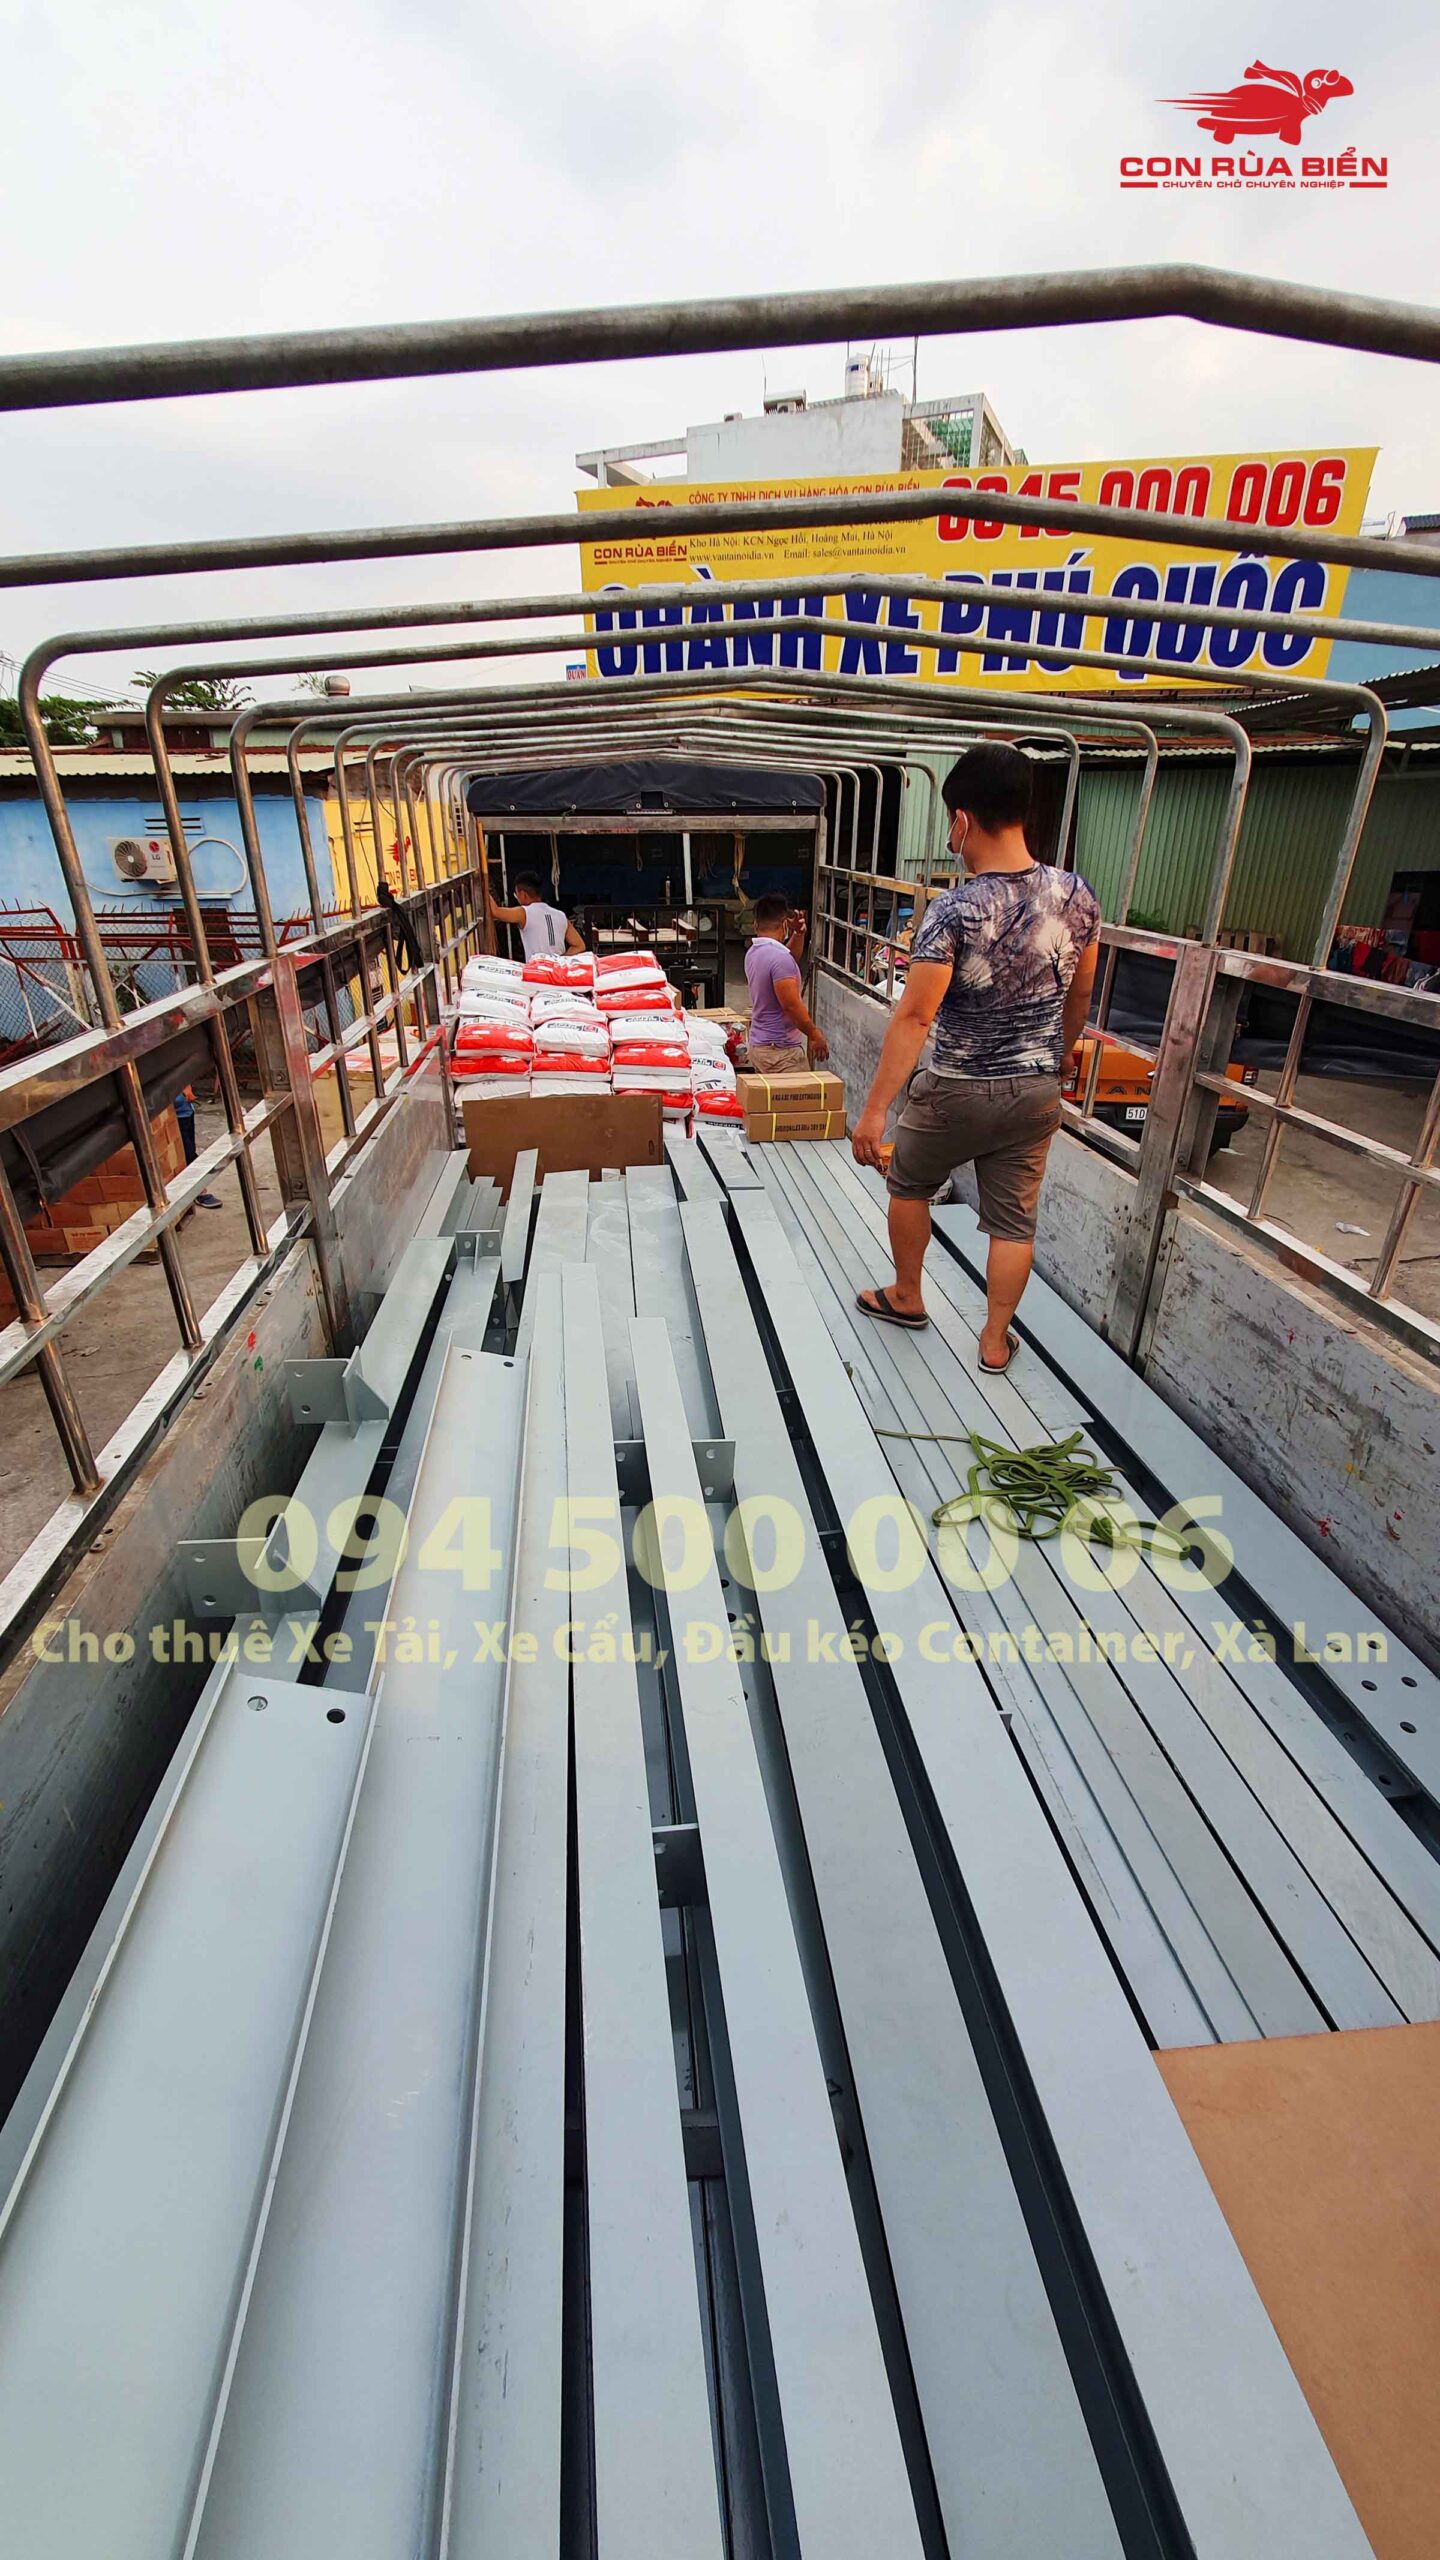 Dự án Vận chuyển Sắt thép đi Phú Quốc tại Chành xe Hà Nội - Đà Nẵng - Sài Gòn - Phú Quốc ở CON RÙA BIỂN